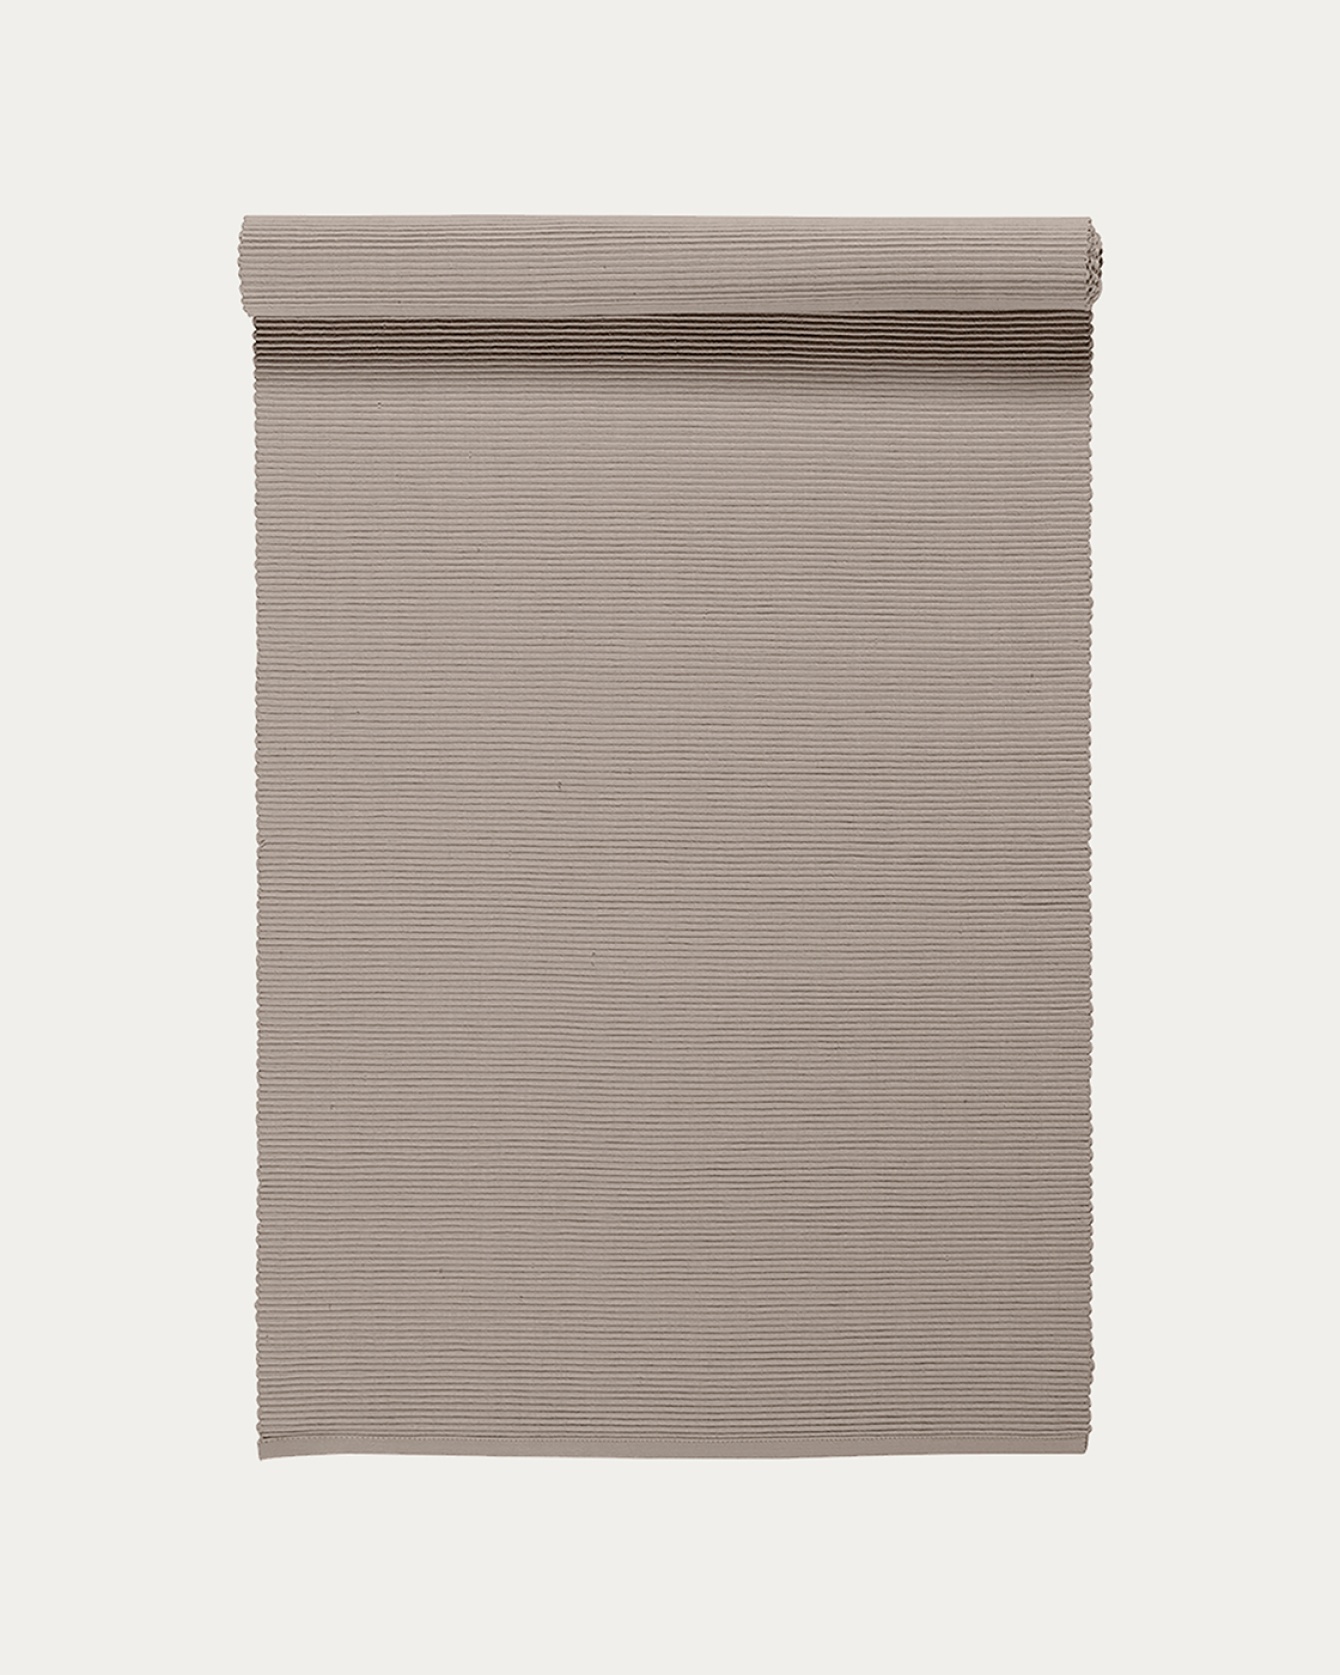 Produktbild maulwurfbraun UNI Tischläufer aus weicher Baumwolle in Rippenqualität von LINUM DESIGN. Größe 45x150 cm.